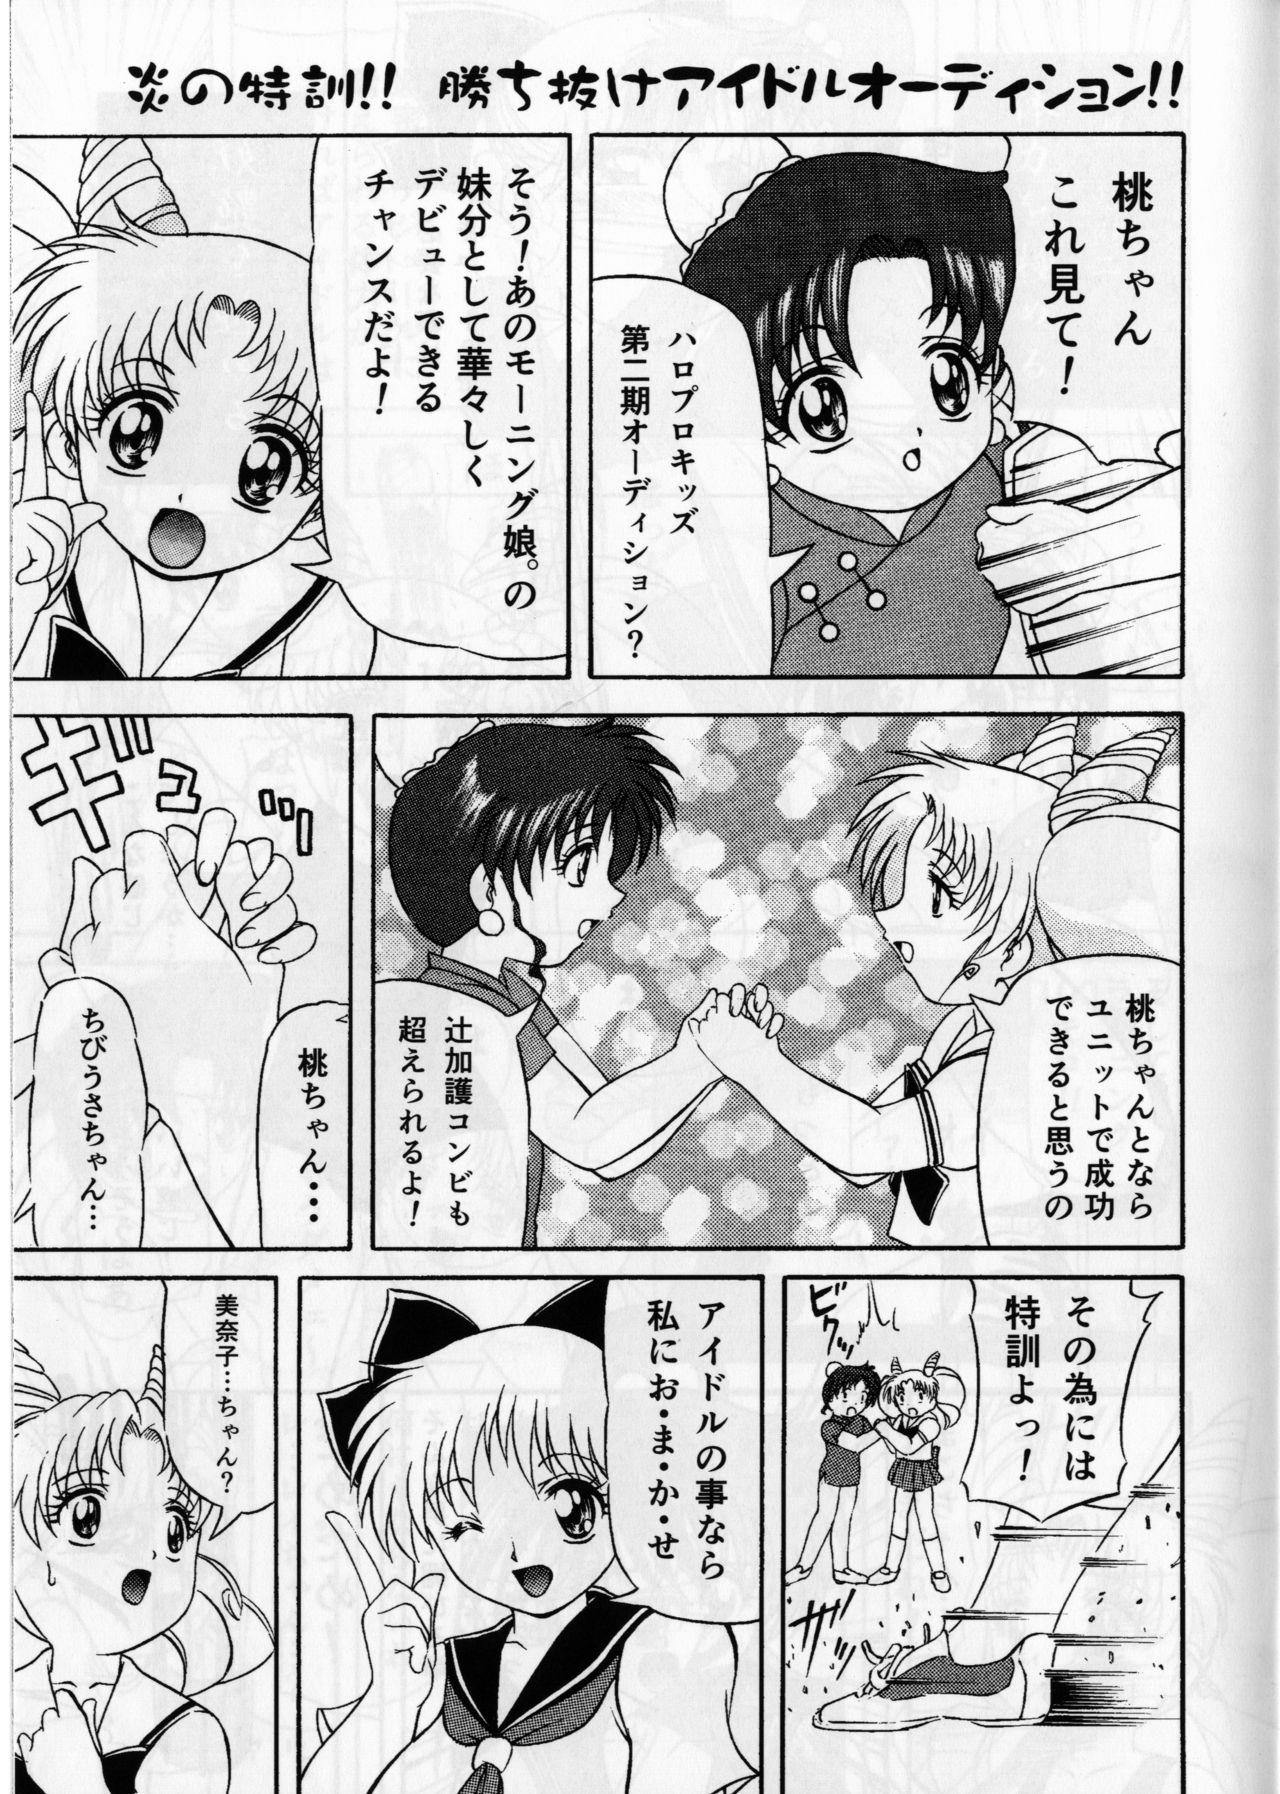 Titfuck Pink Sugar 20th Anniversary Special - Sailor moon Jav - Page 7